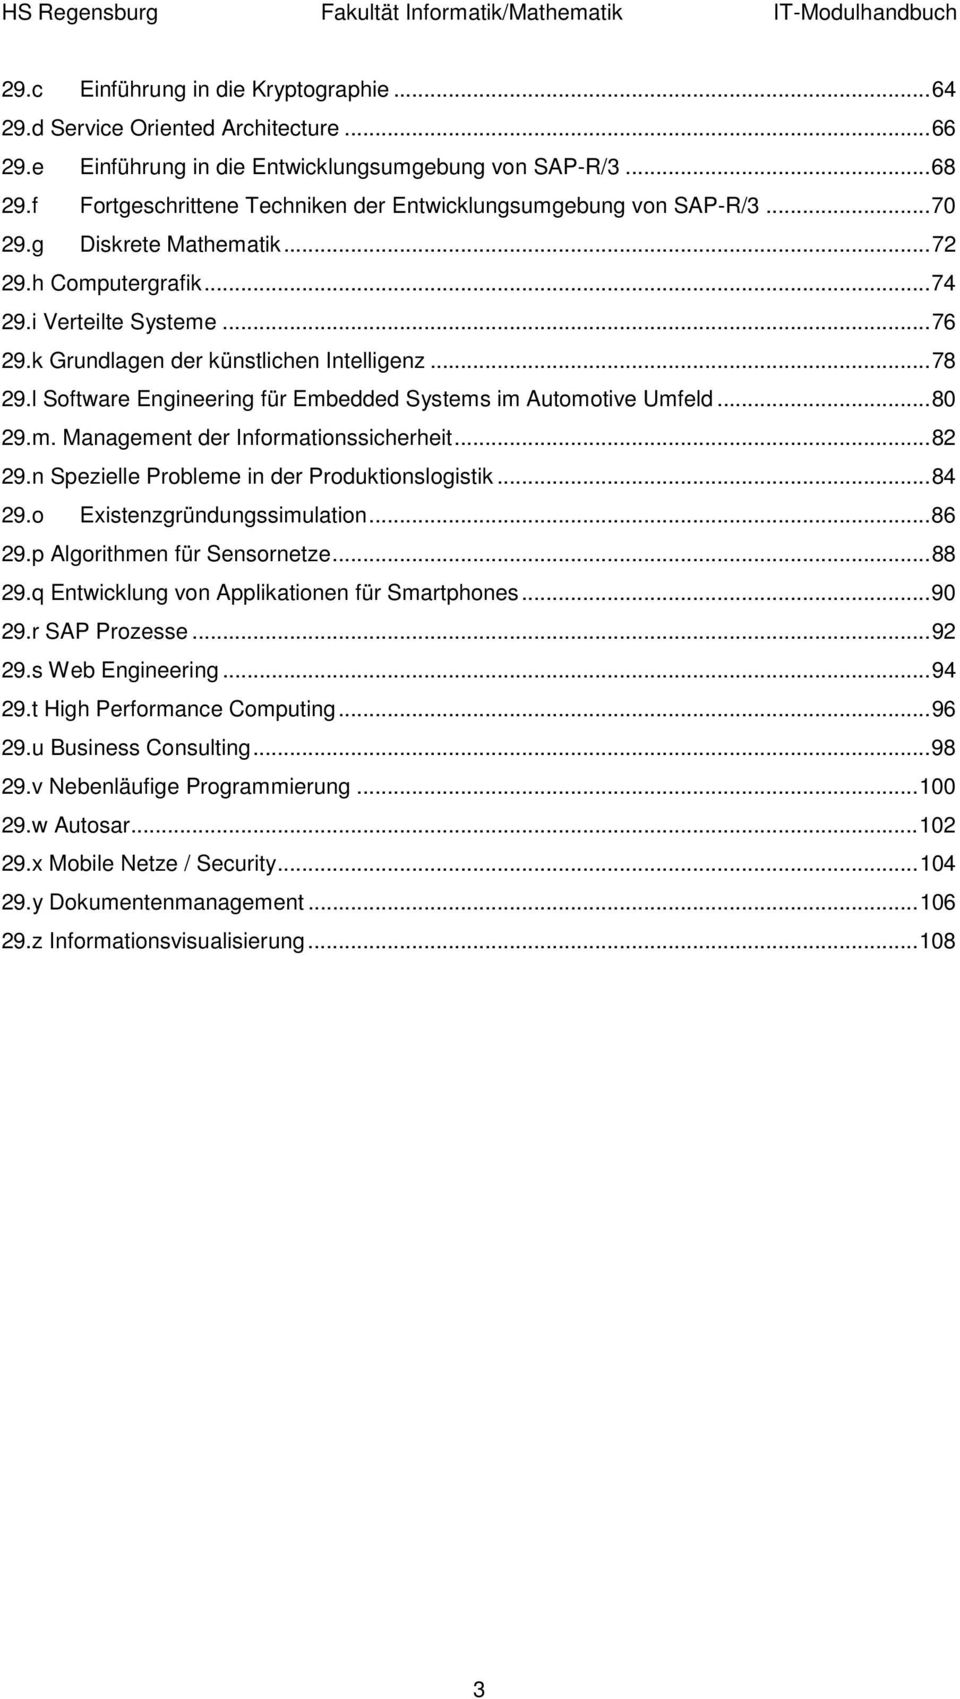 k Grundlagen der künstlichen Intelligenz... 78 29.l Software Engineering für Embedded Systems im Automotive Umfeld... 80 29.m. Management der Informationssicherheit... 82 29.